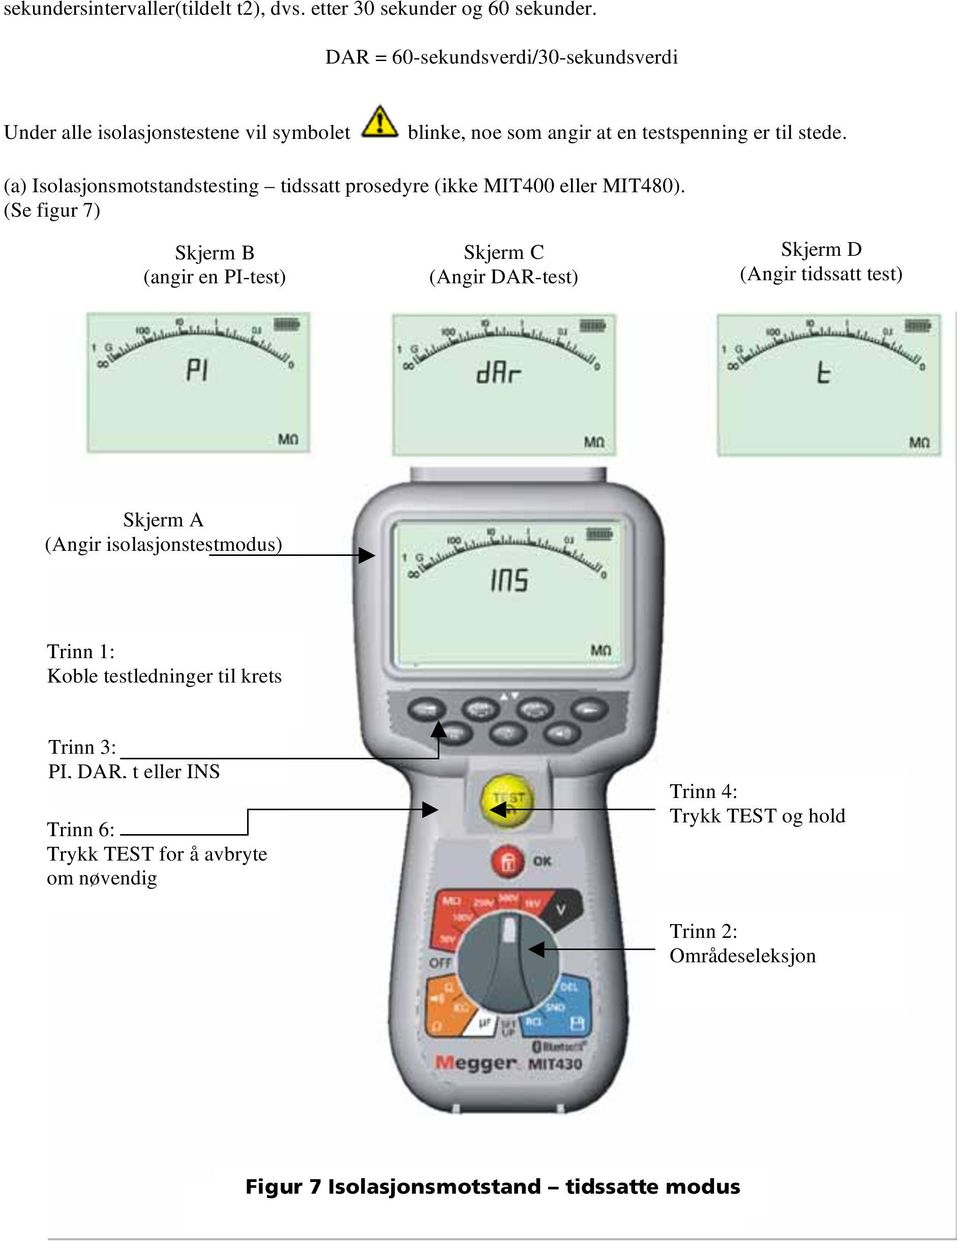 (a) Isolasjonsmotstandstesting tidssatt prosedyre (ikke MIT400 eller MIT480).